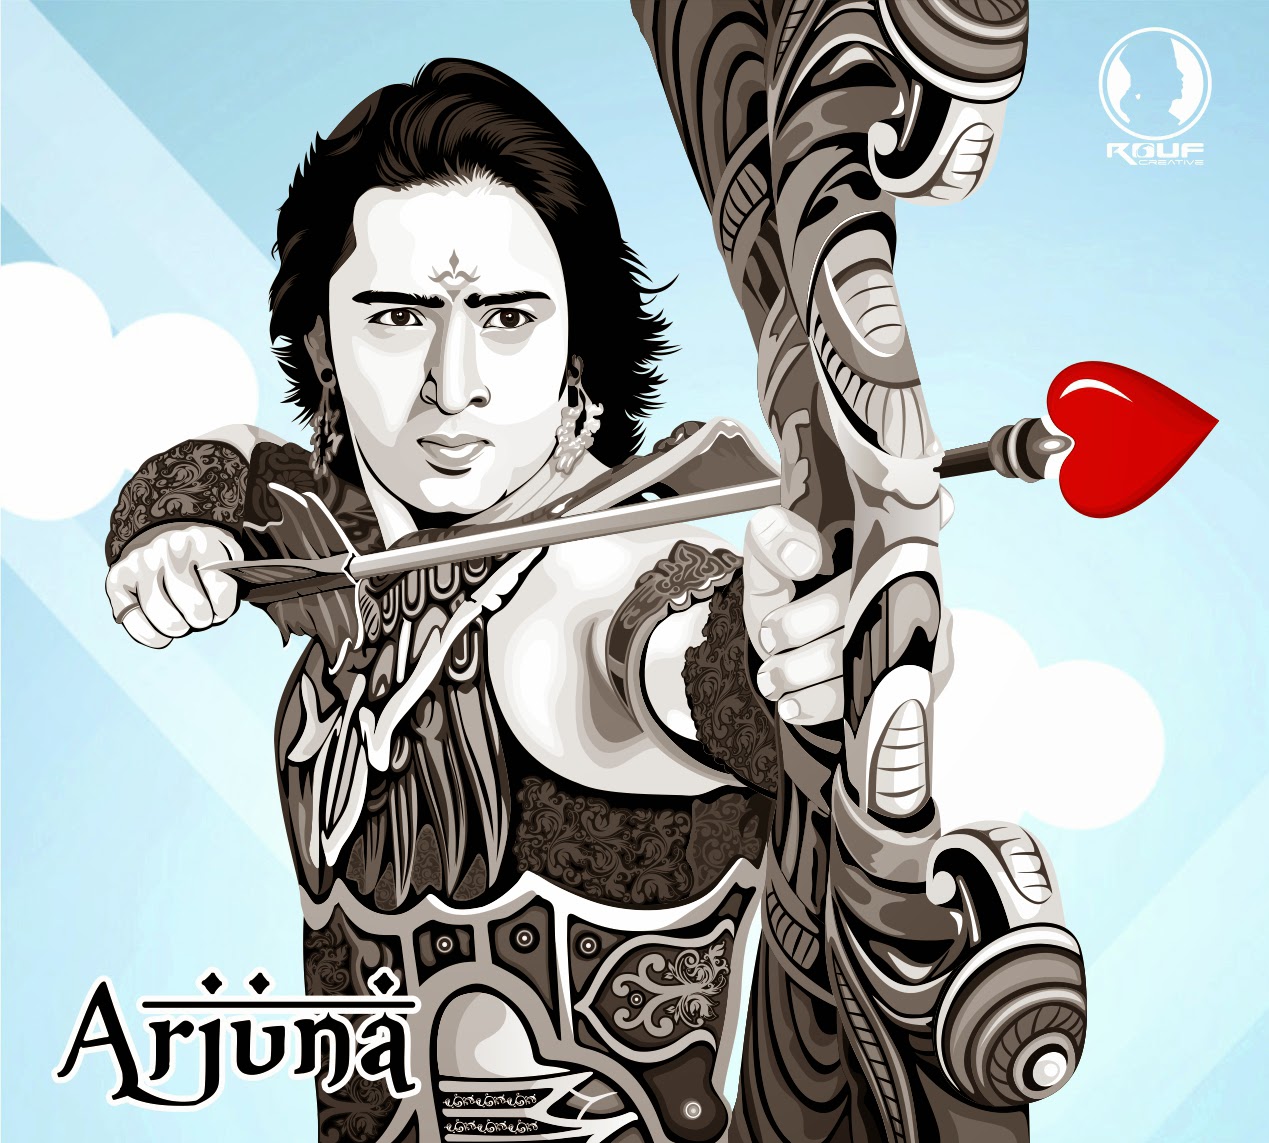 Arjuna Mencari Cinta Mp3 Free Download